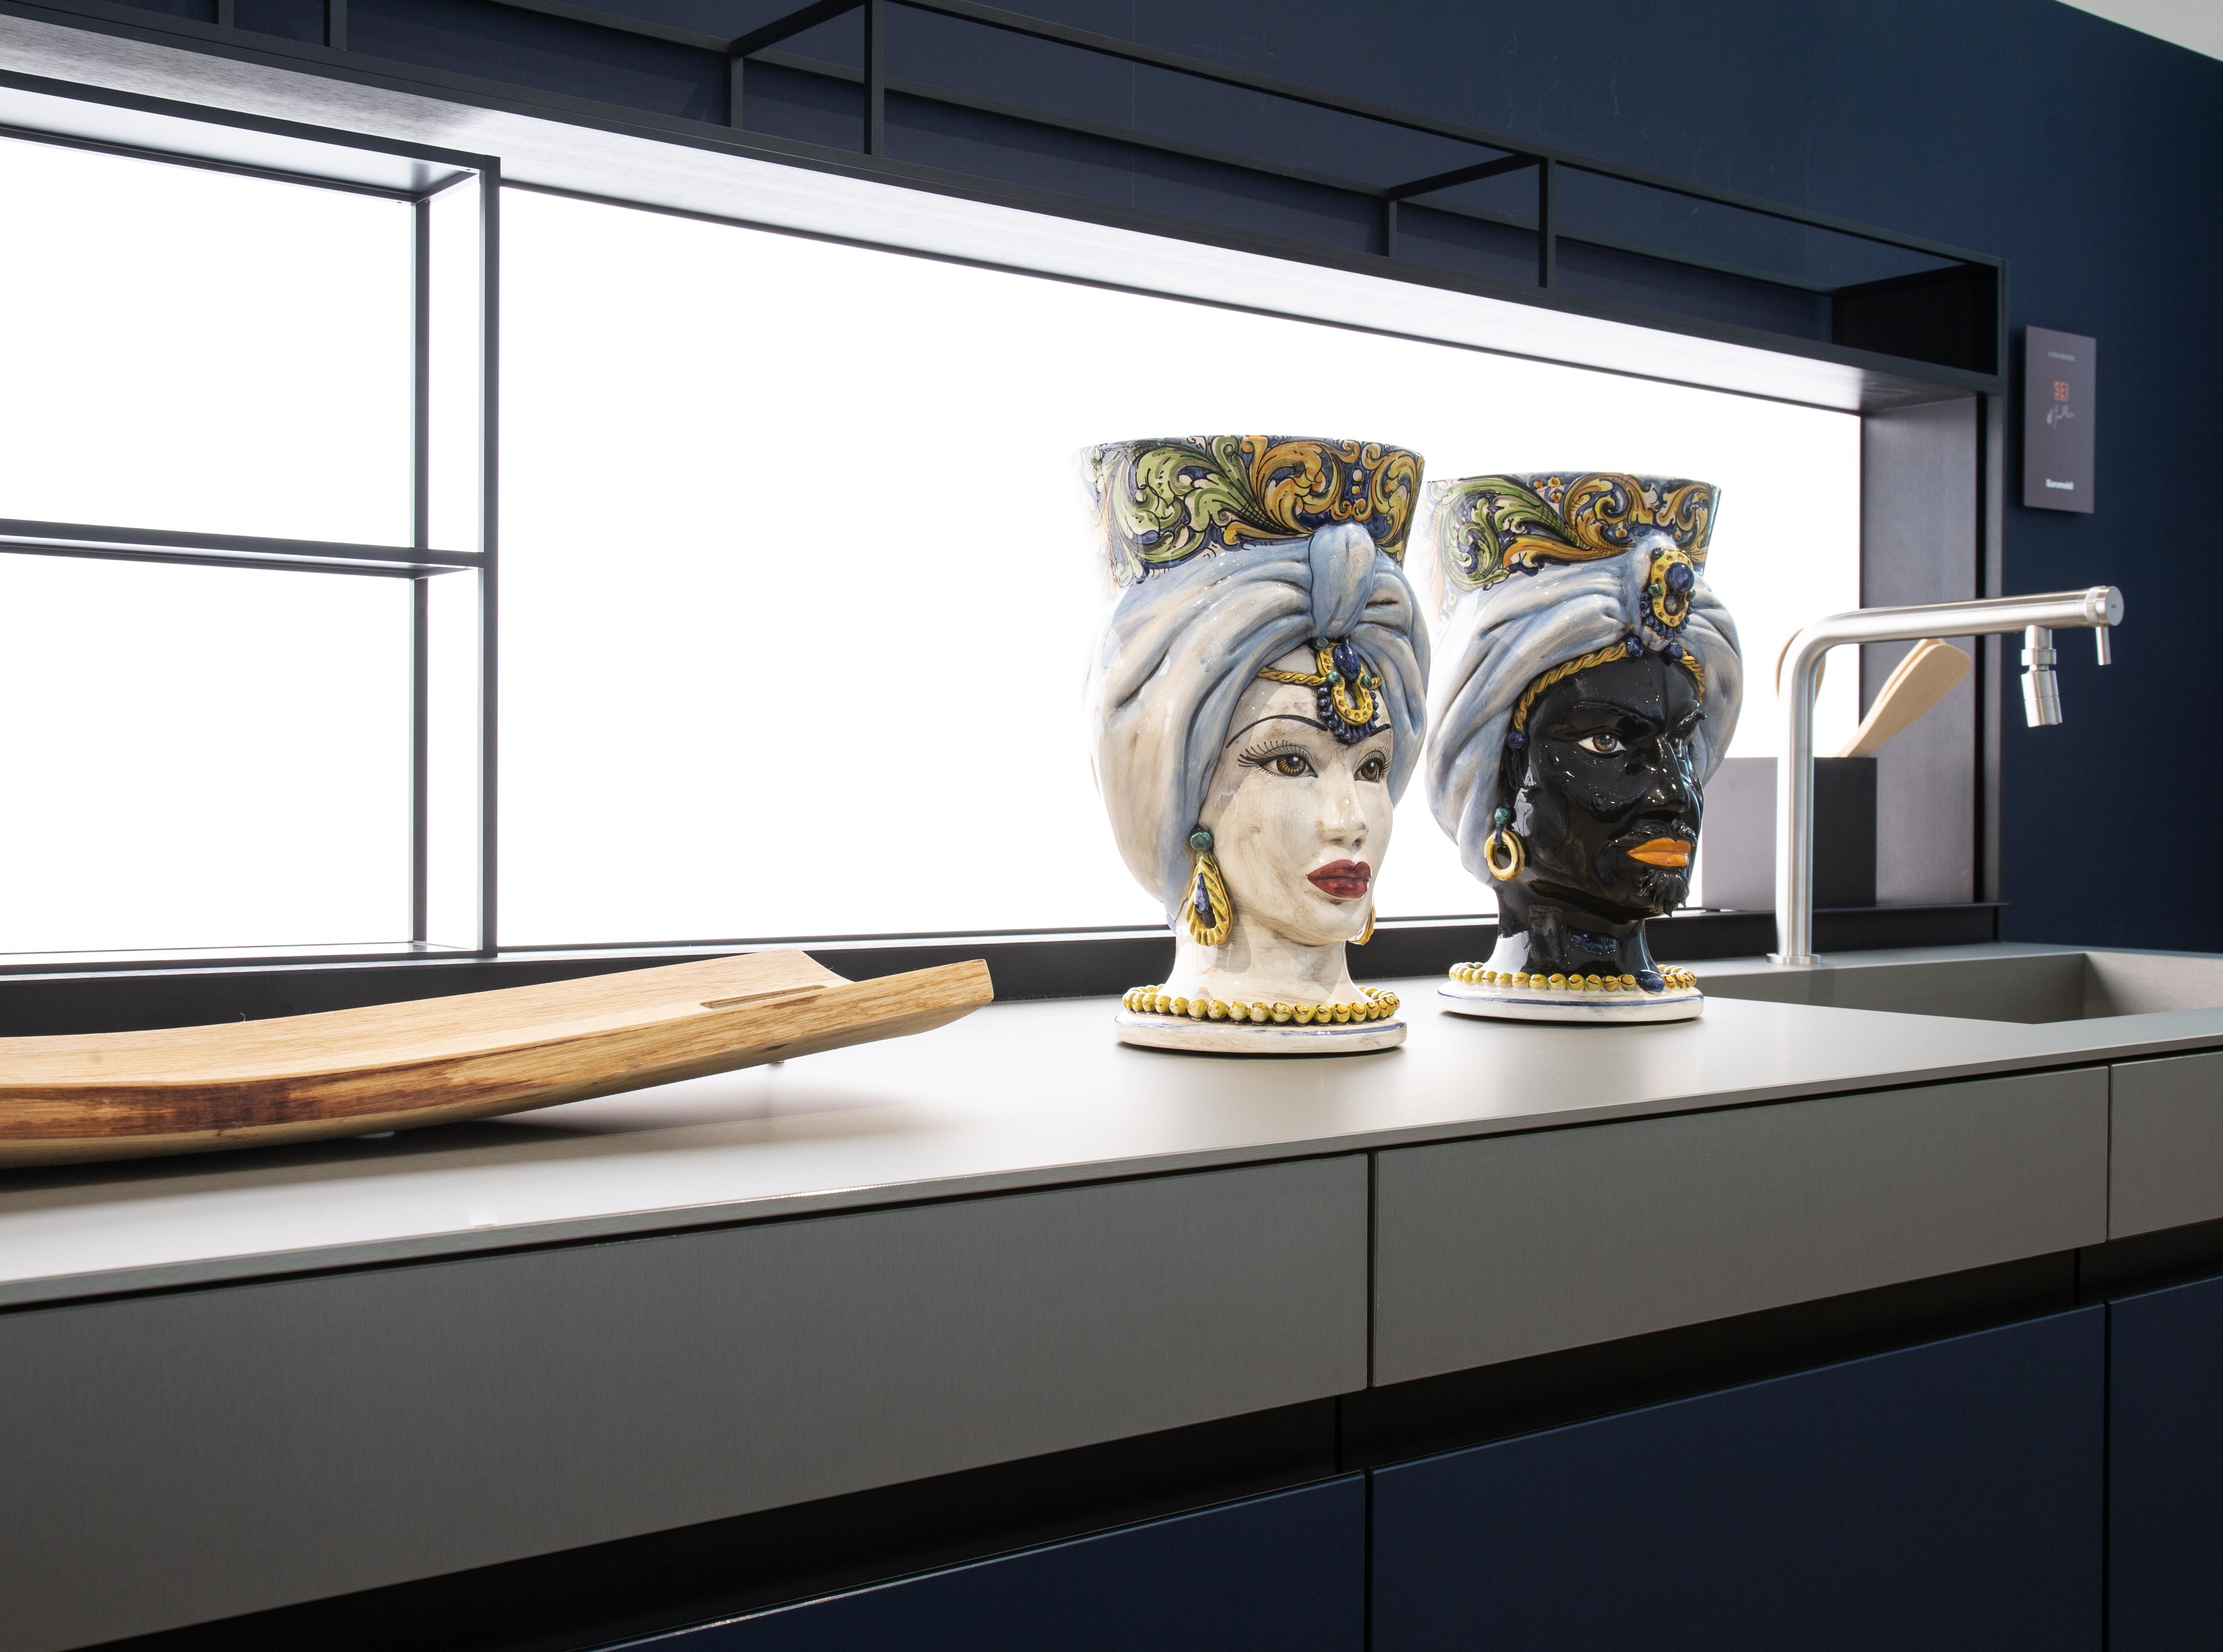 Die Collection'S

Diese Kollektion bietet Ideen für eine zeitgenössische Einrichtung durch raffinierte Kunstwerke, die an die Tradition der Keramik von Caltagirone gebunden sind, Kunstobjekte, die Geschichte und Design verbinden.
Die extreme